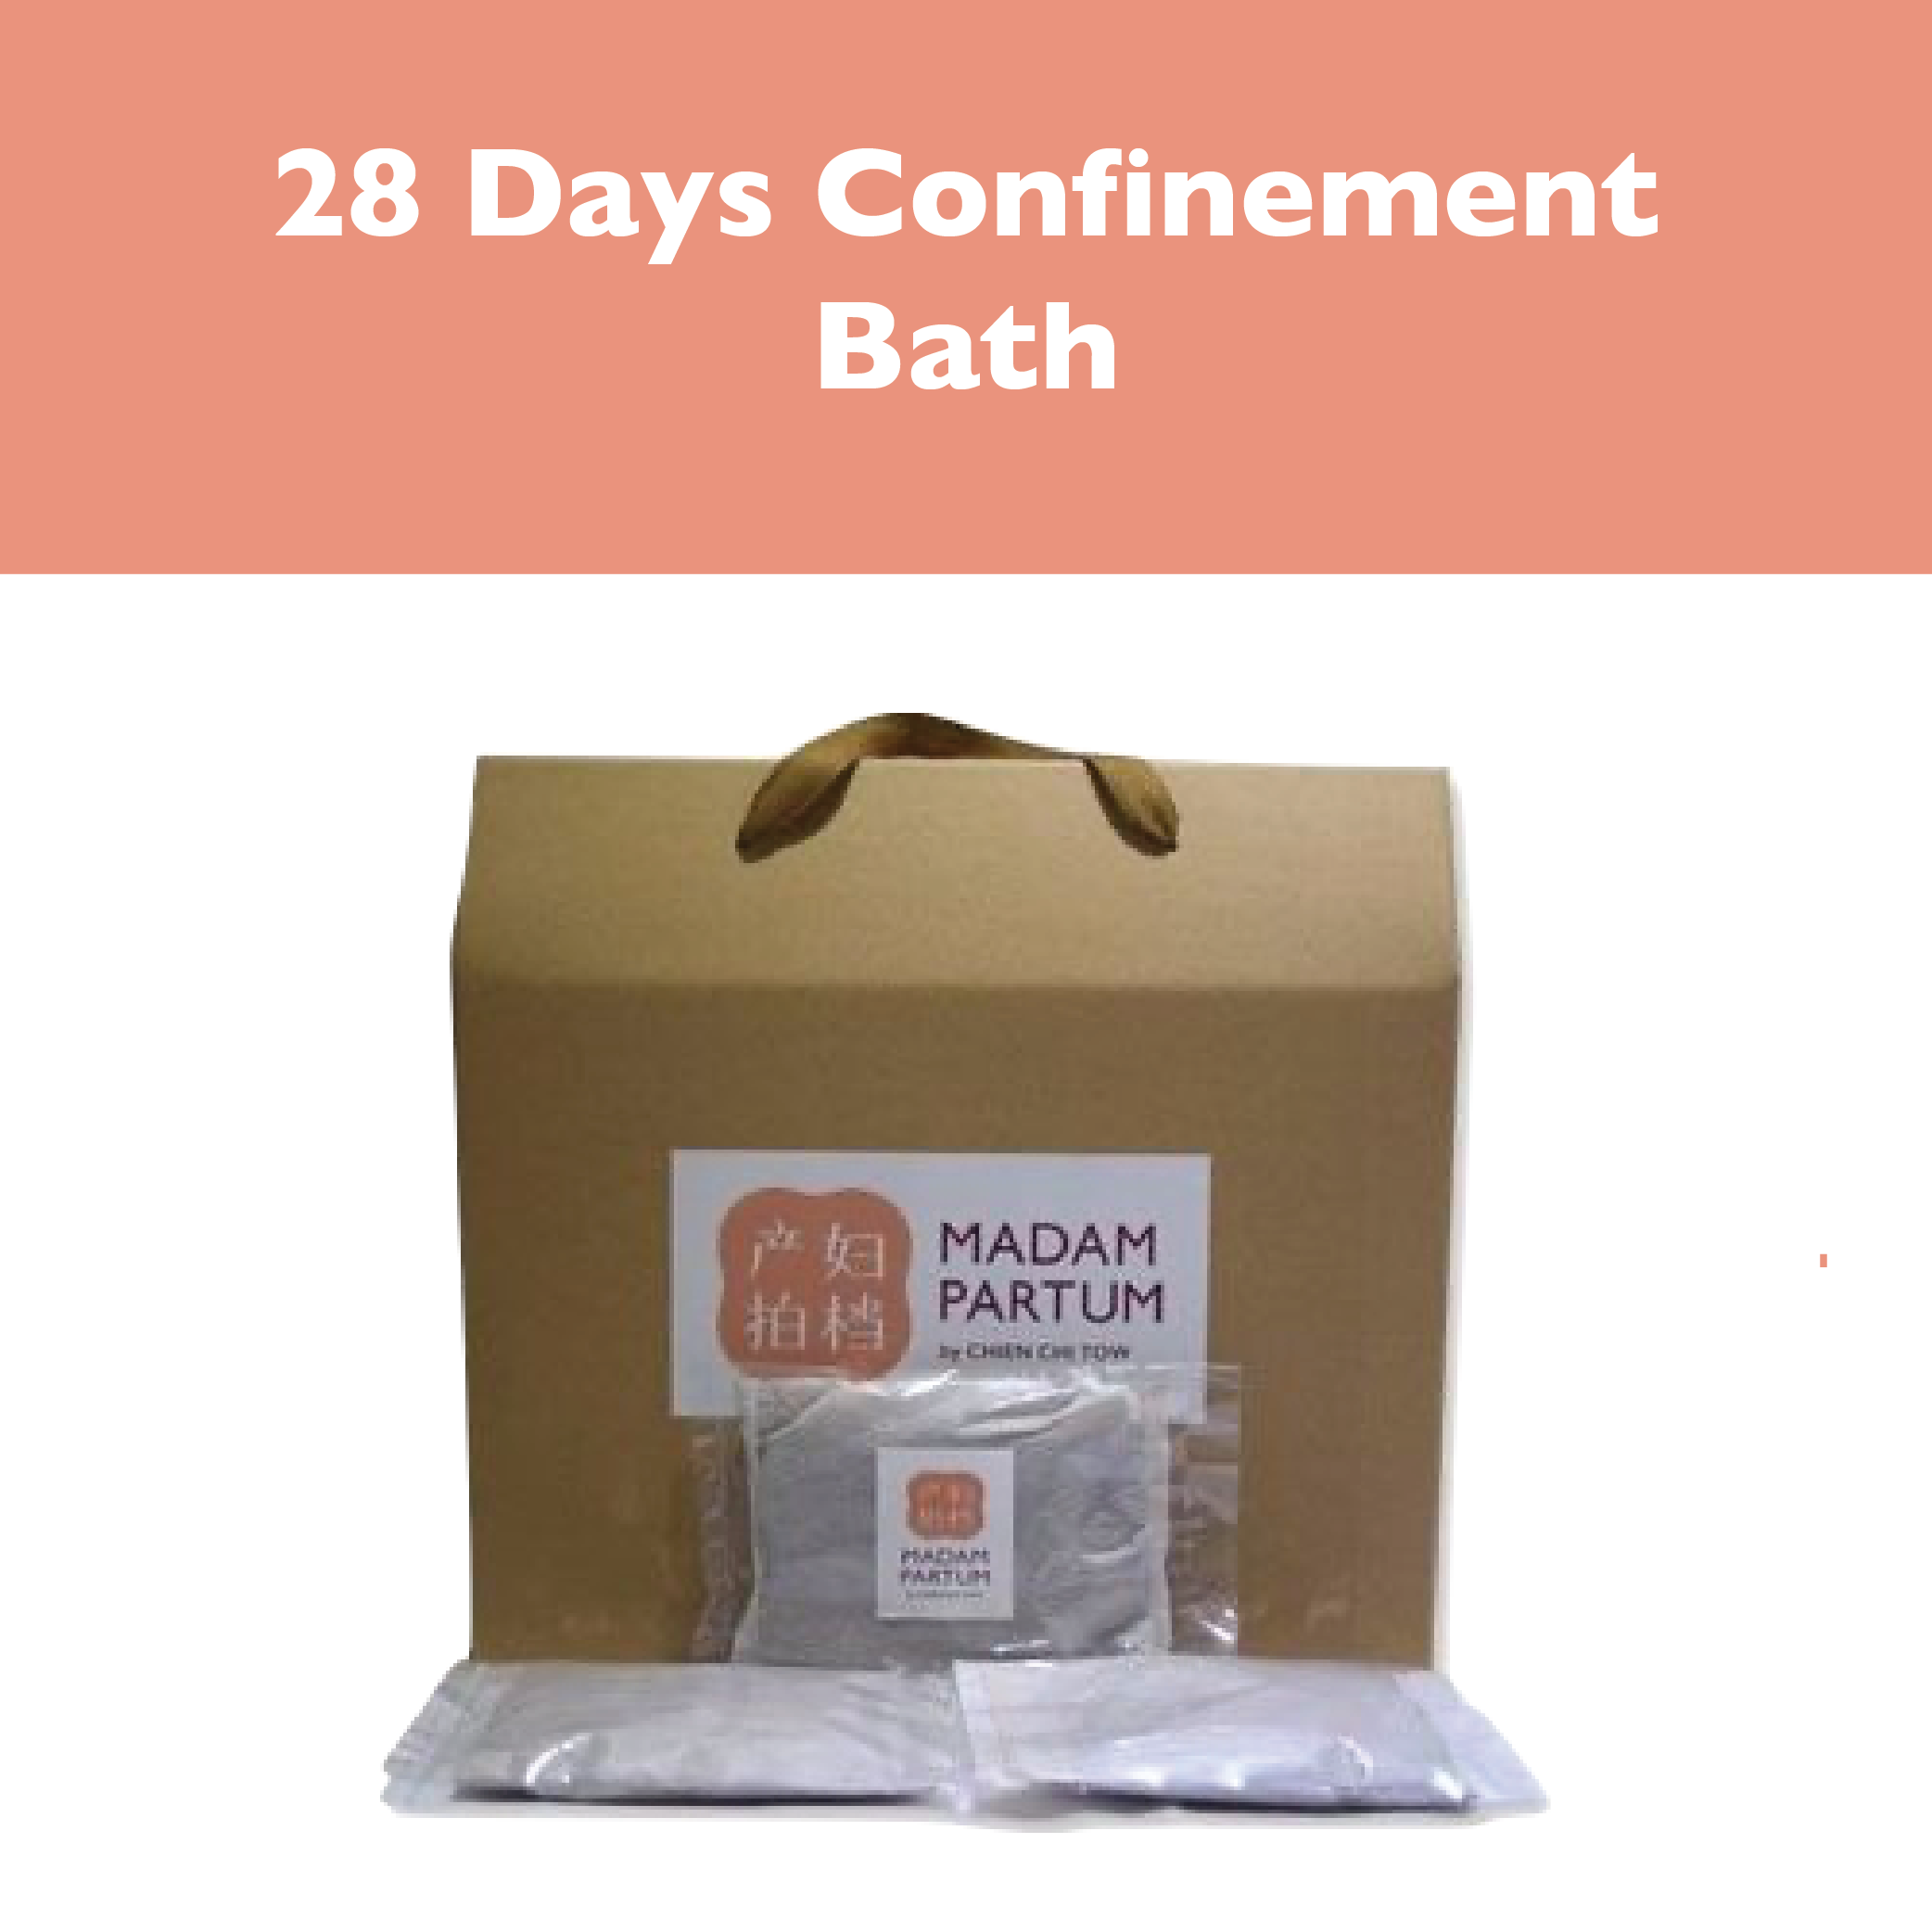 Madam Partum 28 Days Confinement Bath